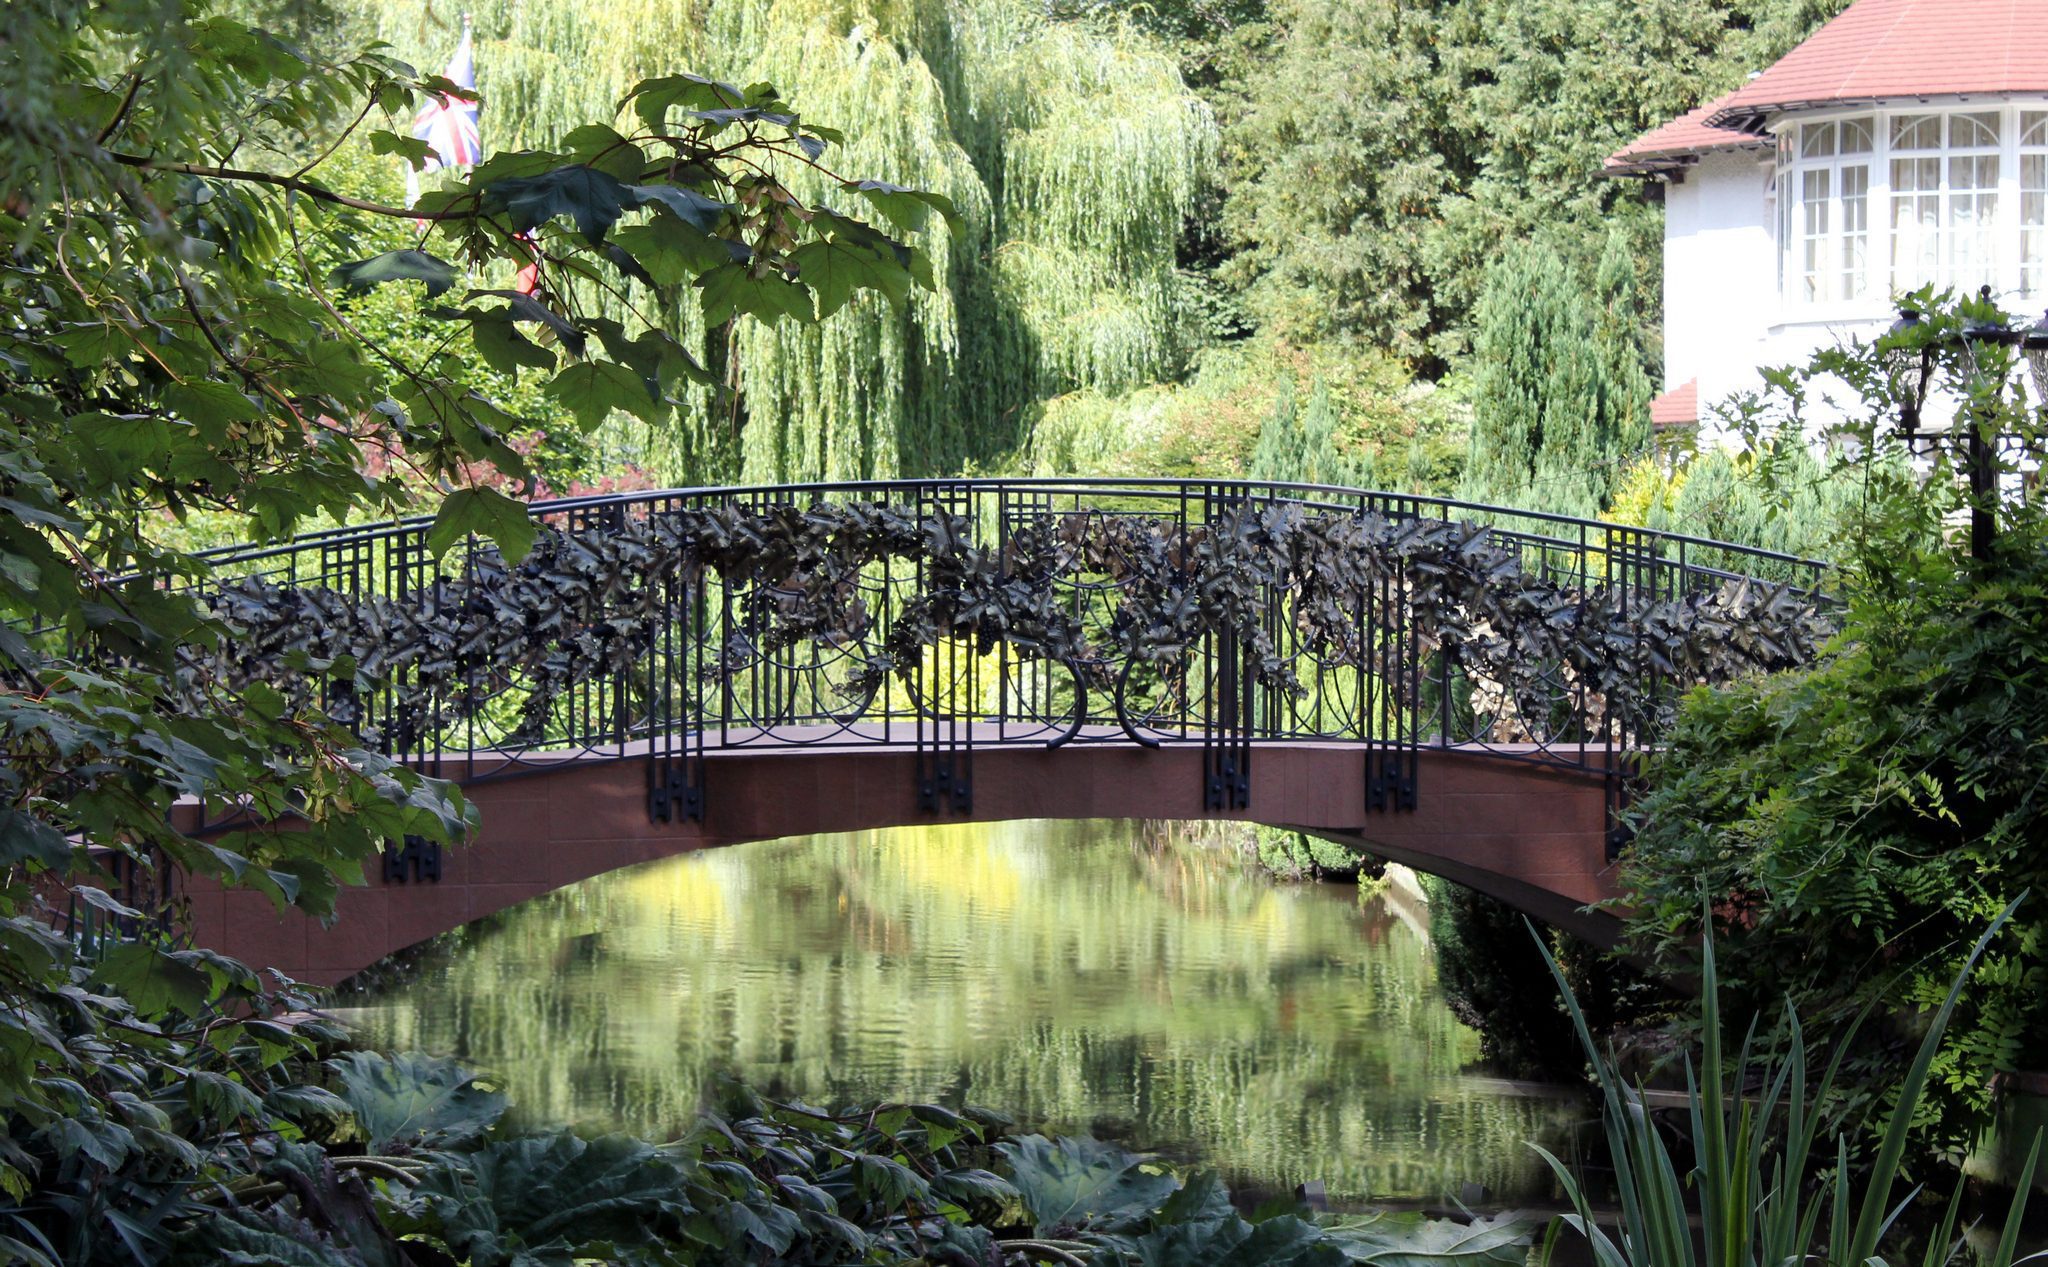 Ponte in ferro battuto per giardino privato inglese